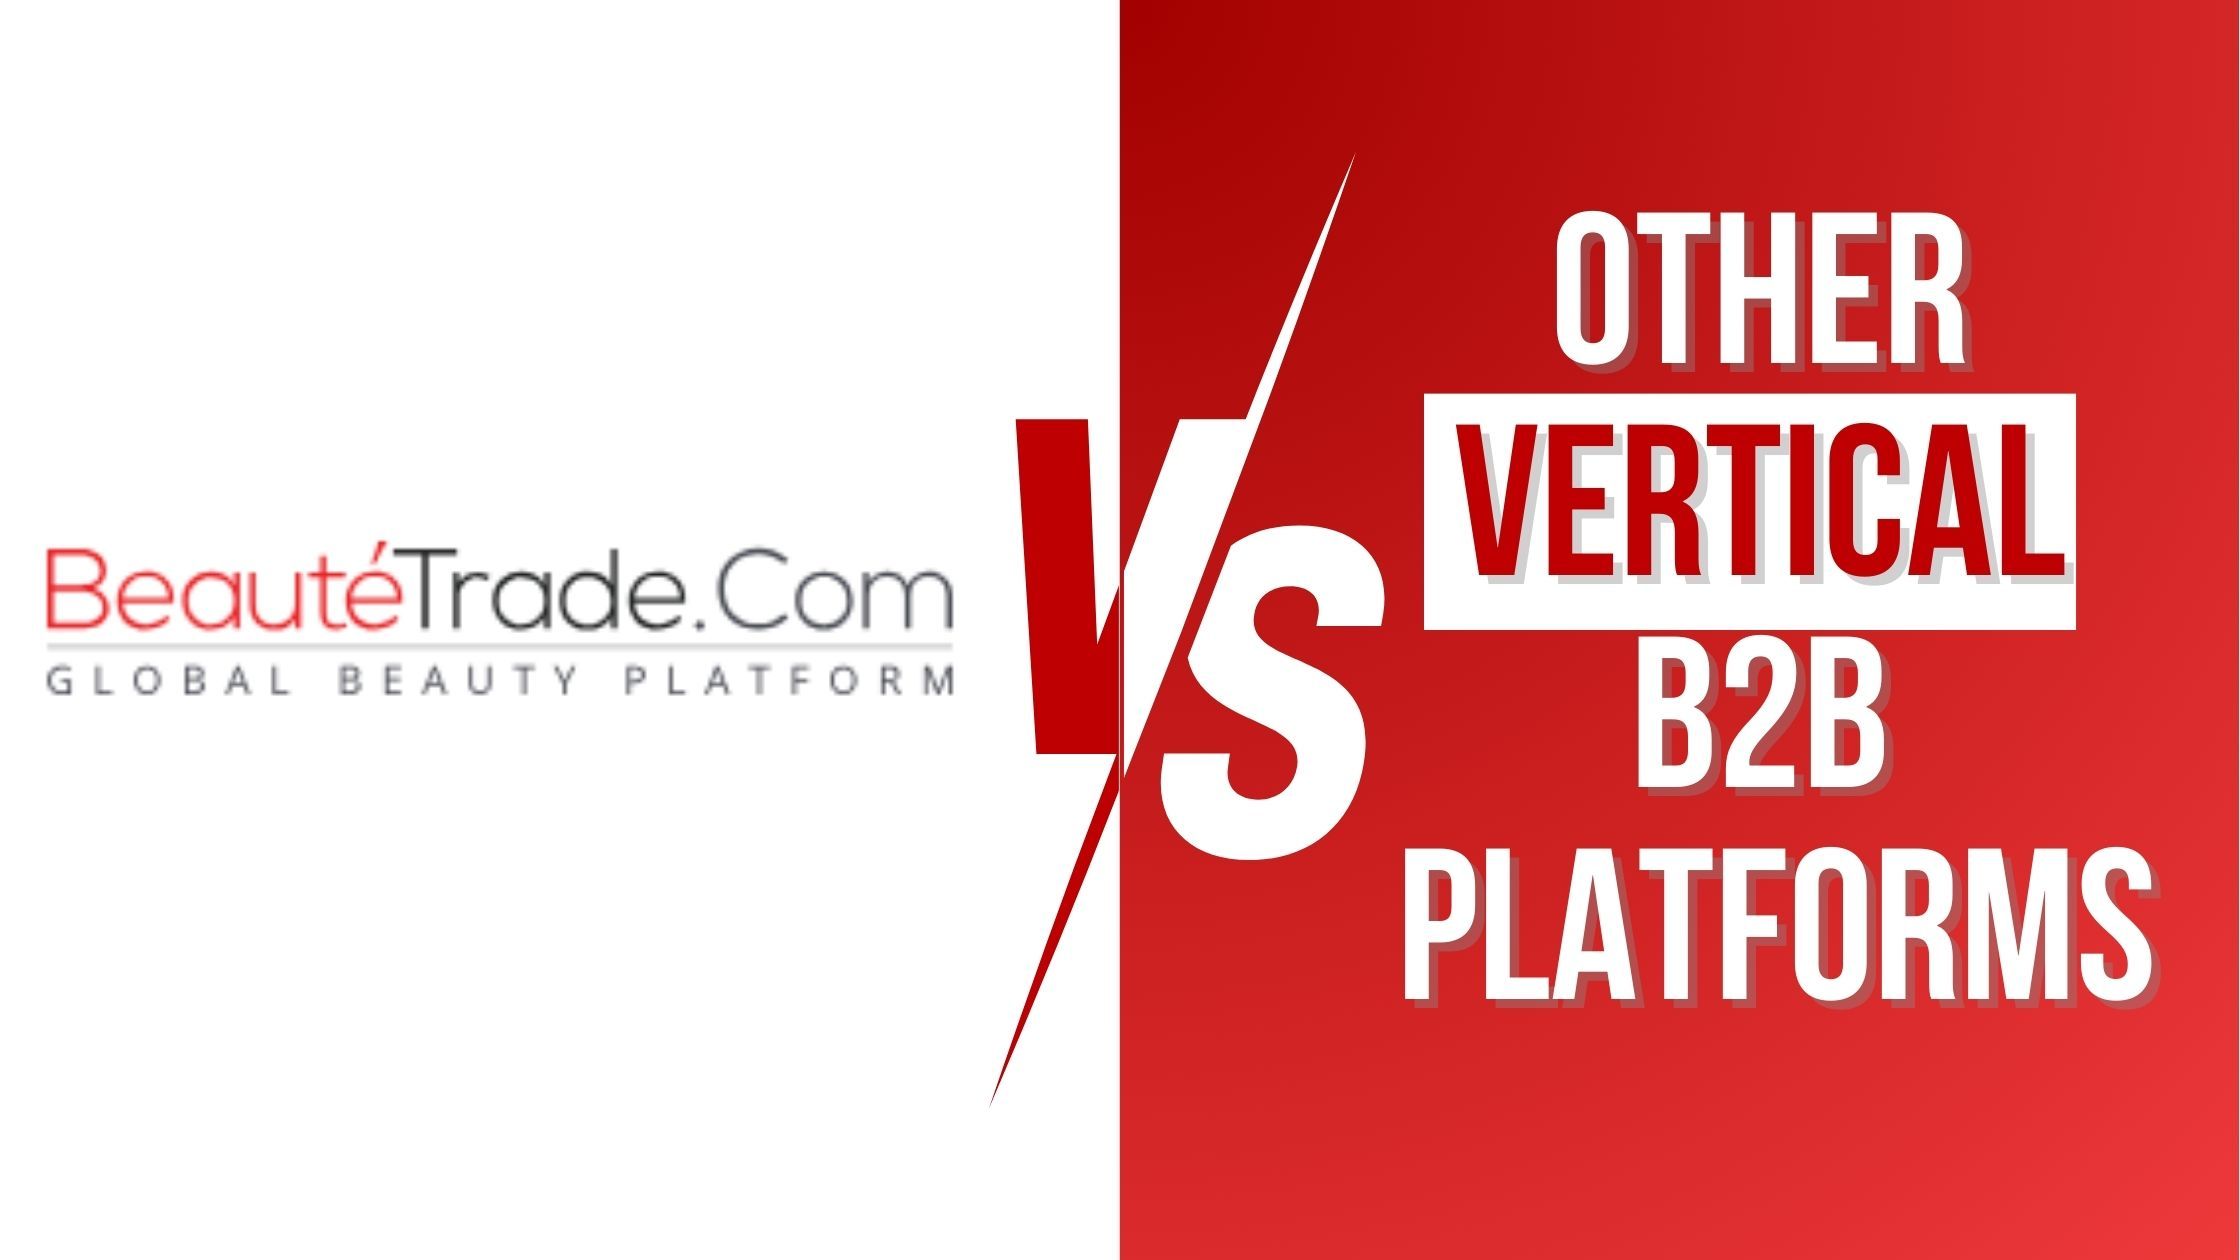 Beautetrade vs. Other Vertical B2B Platforms